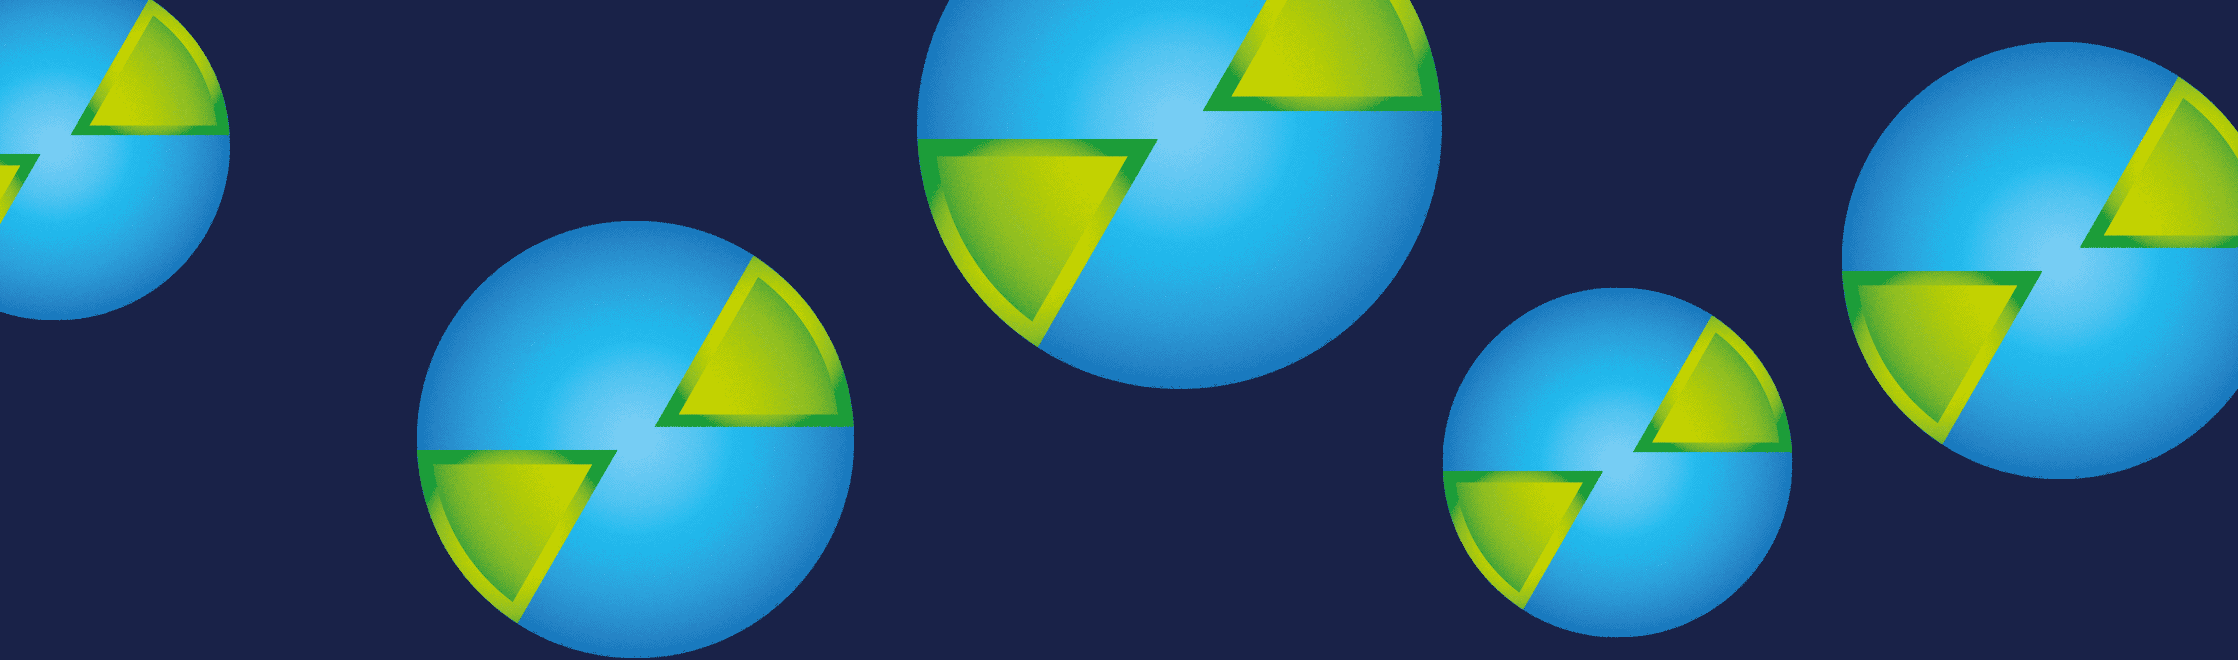 niebiesko-zielony wzór z sygnetów logo marki firmy Advecto, okrągłych globów ziemskich